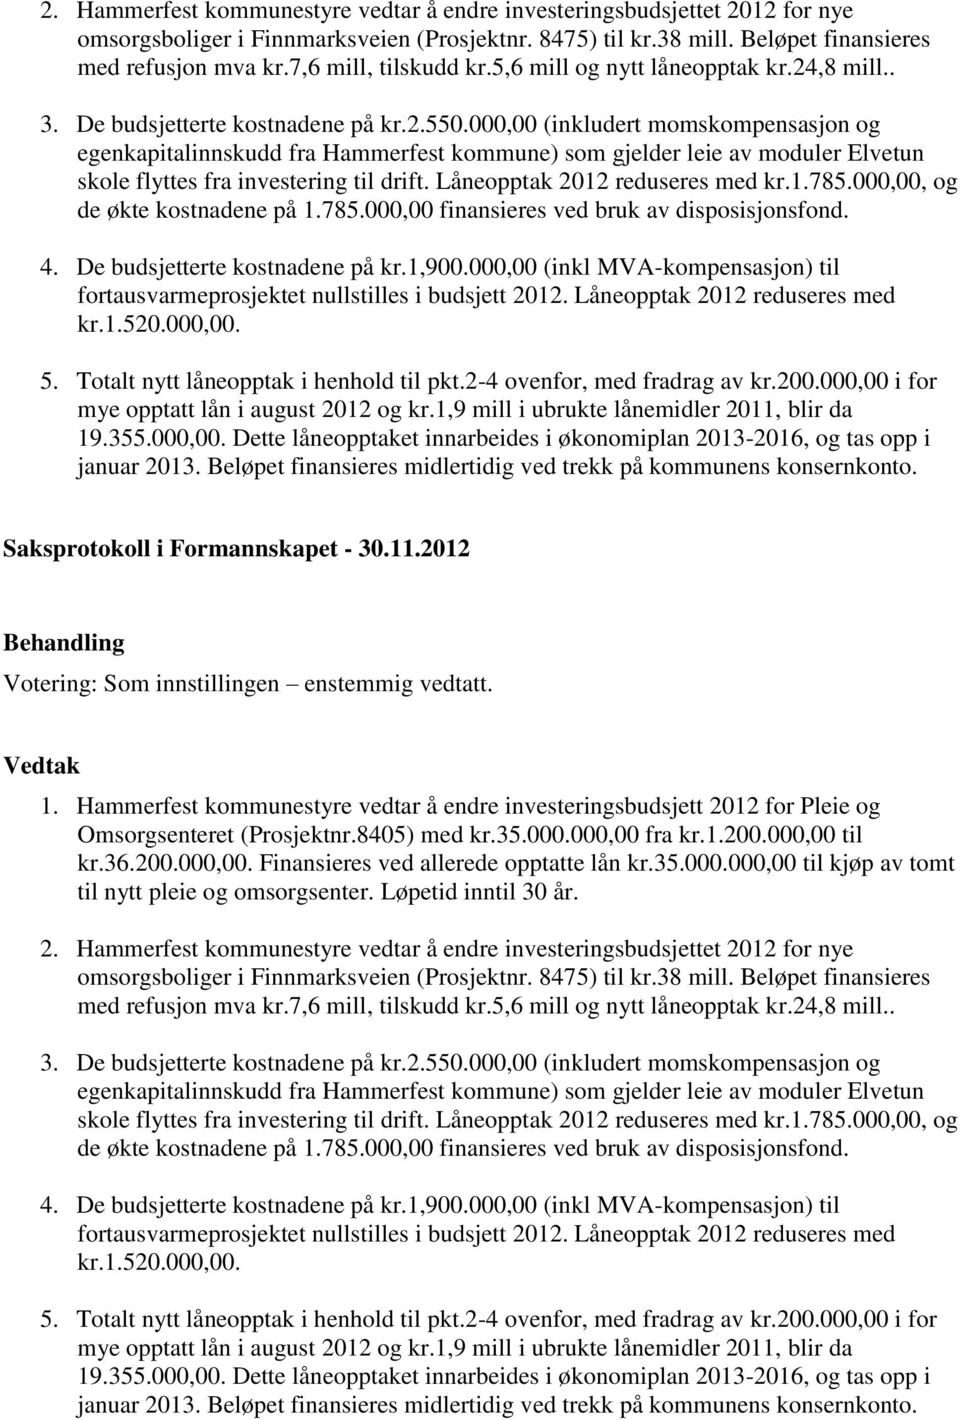 000,00 (inkludert momskompensasjon og egenkapitalinnskudd fra Hammerfest kommune) som gjelder leie av moduler Elvetun skole flyttes fra investering til drift. Låneopptak 2012 reduseres med kr.1.785.